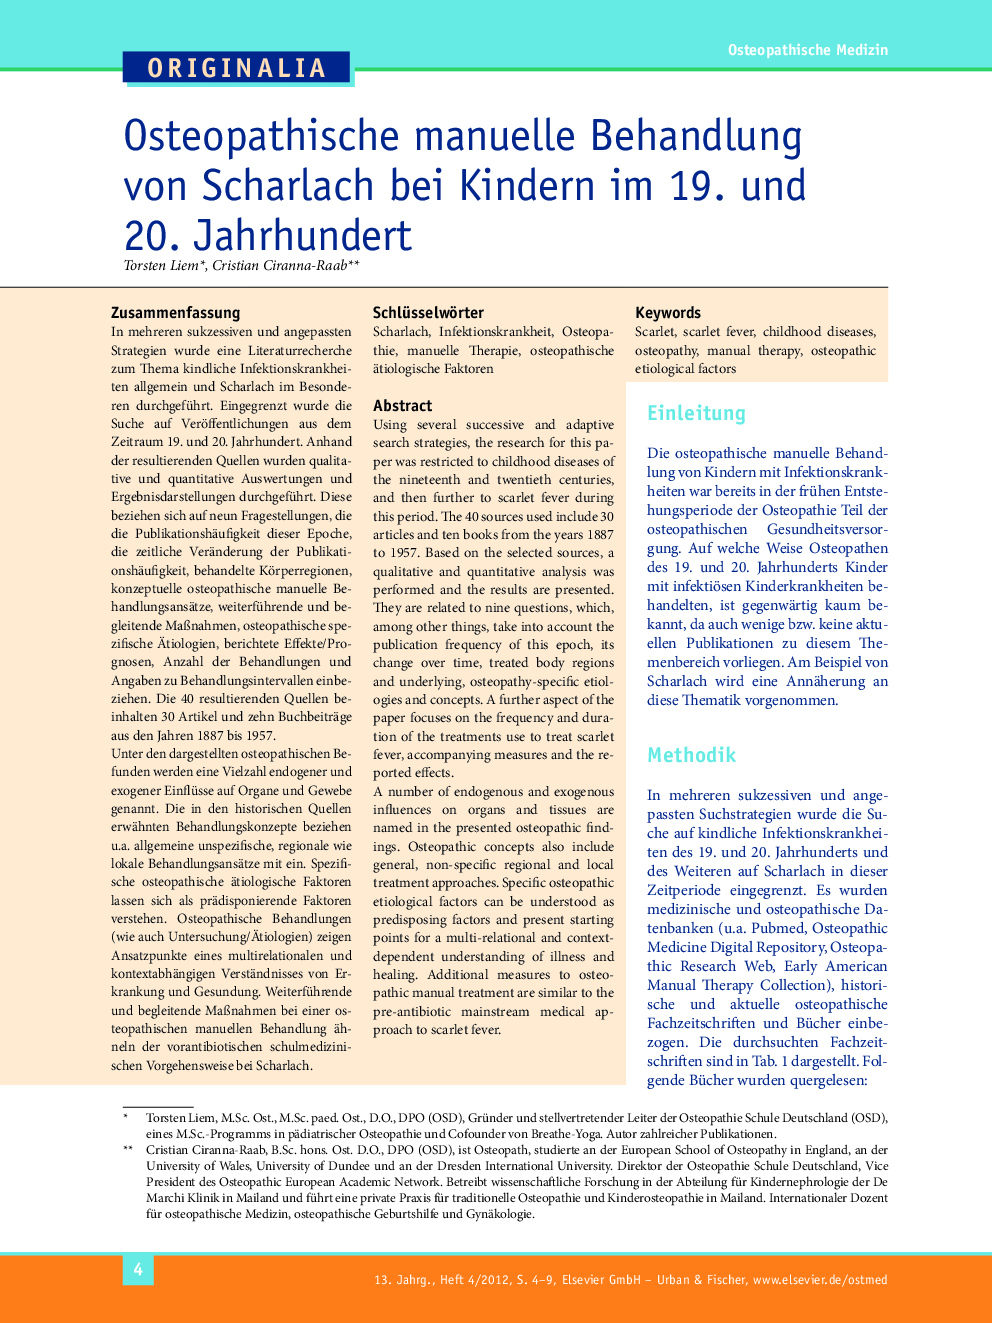 Osteopathische manuelle Behandlung von Scharlach bei Kindern im 19. und 20. Jahrhundert